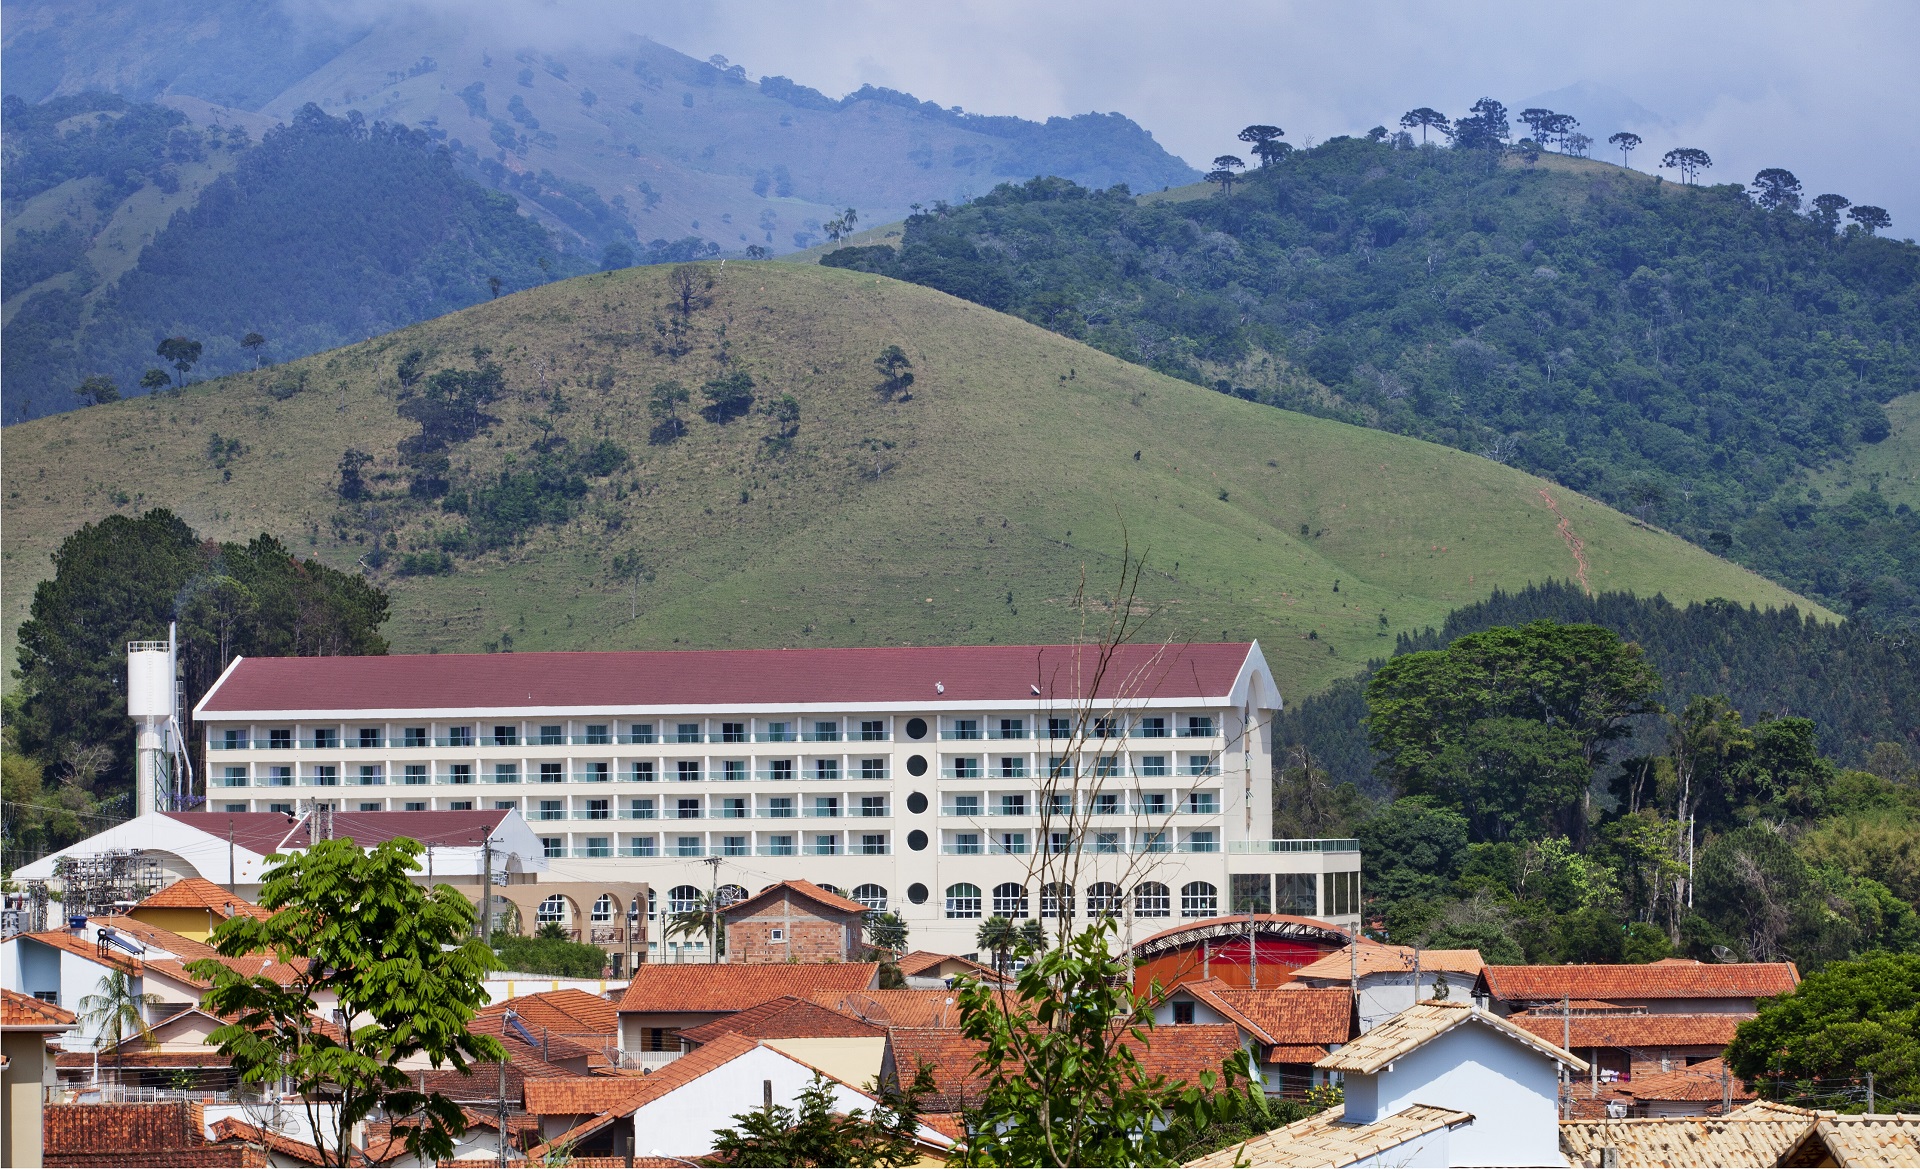 Hotéis do Sesc mantém a excelência em hospedagem, respeitando os protocolos  de segurança - Notícias